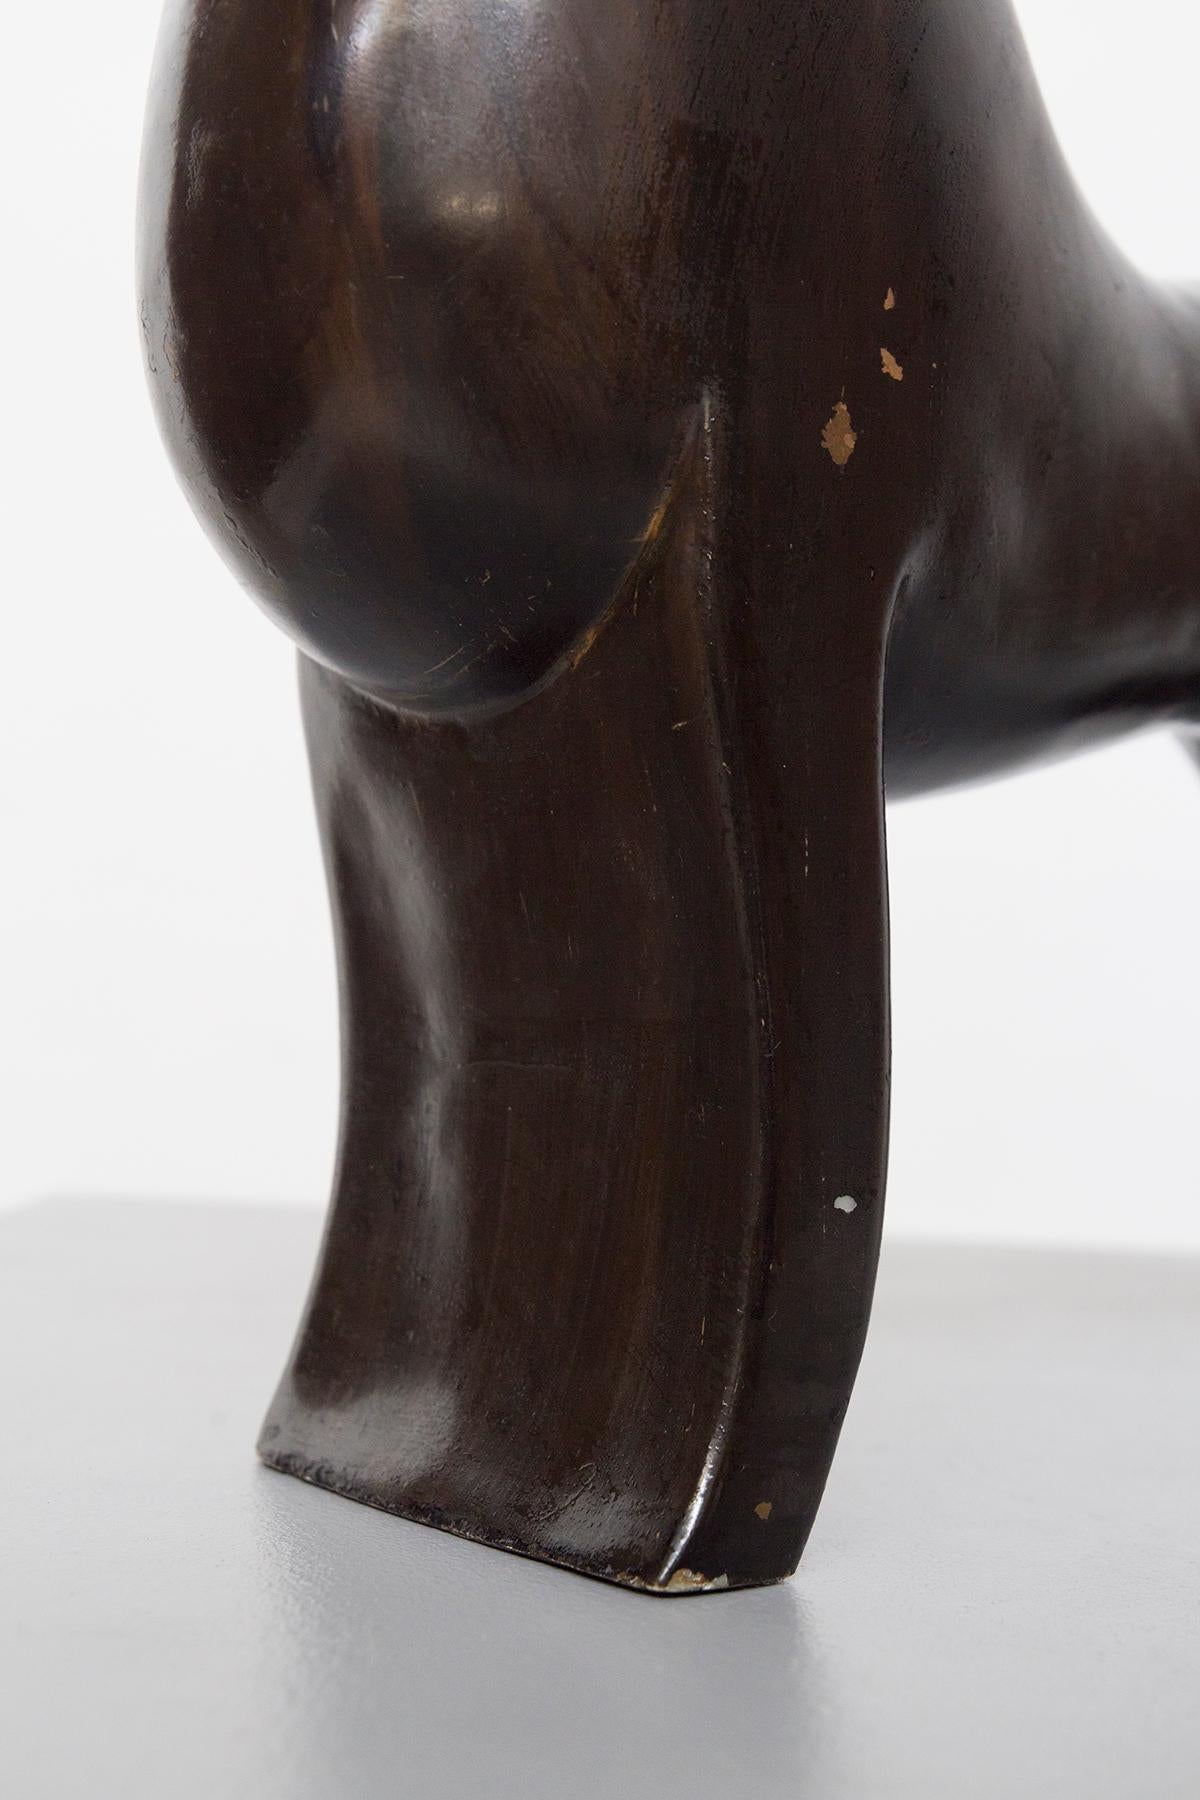 Mid-Century Modern Gio Ponti Wooden Horse Sculpture (Attr.)